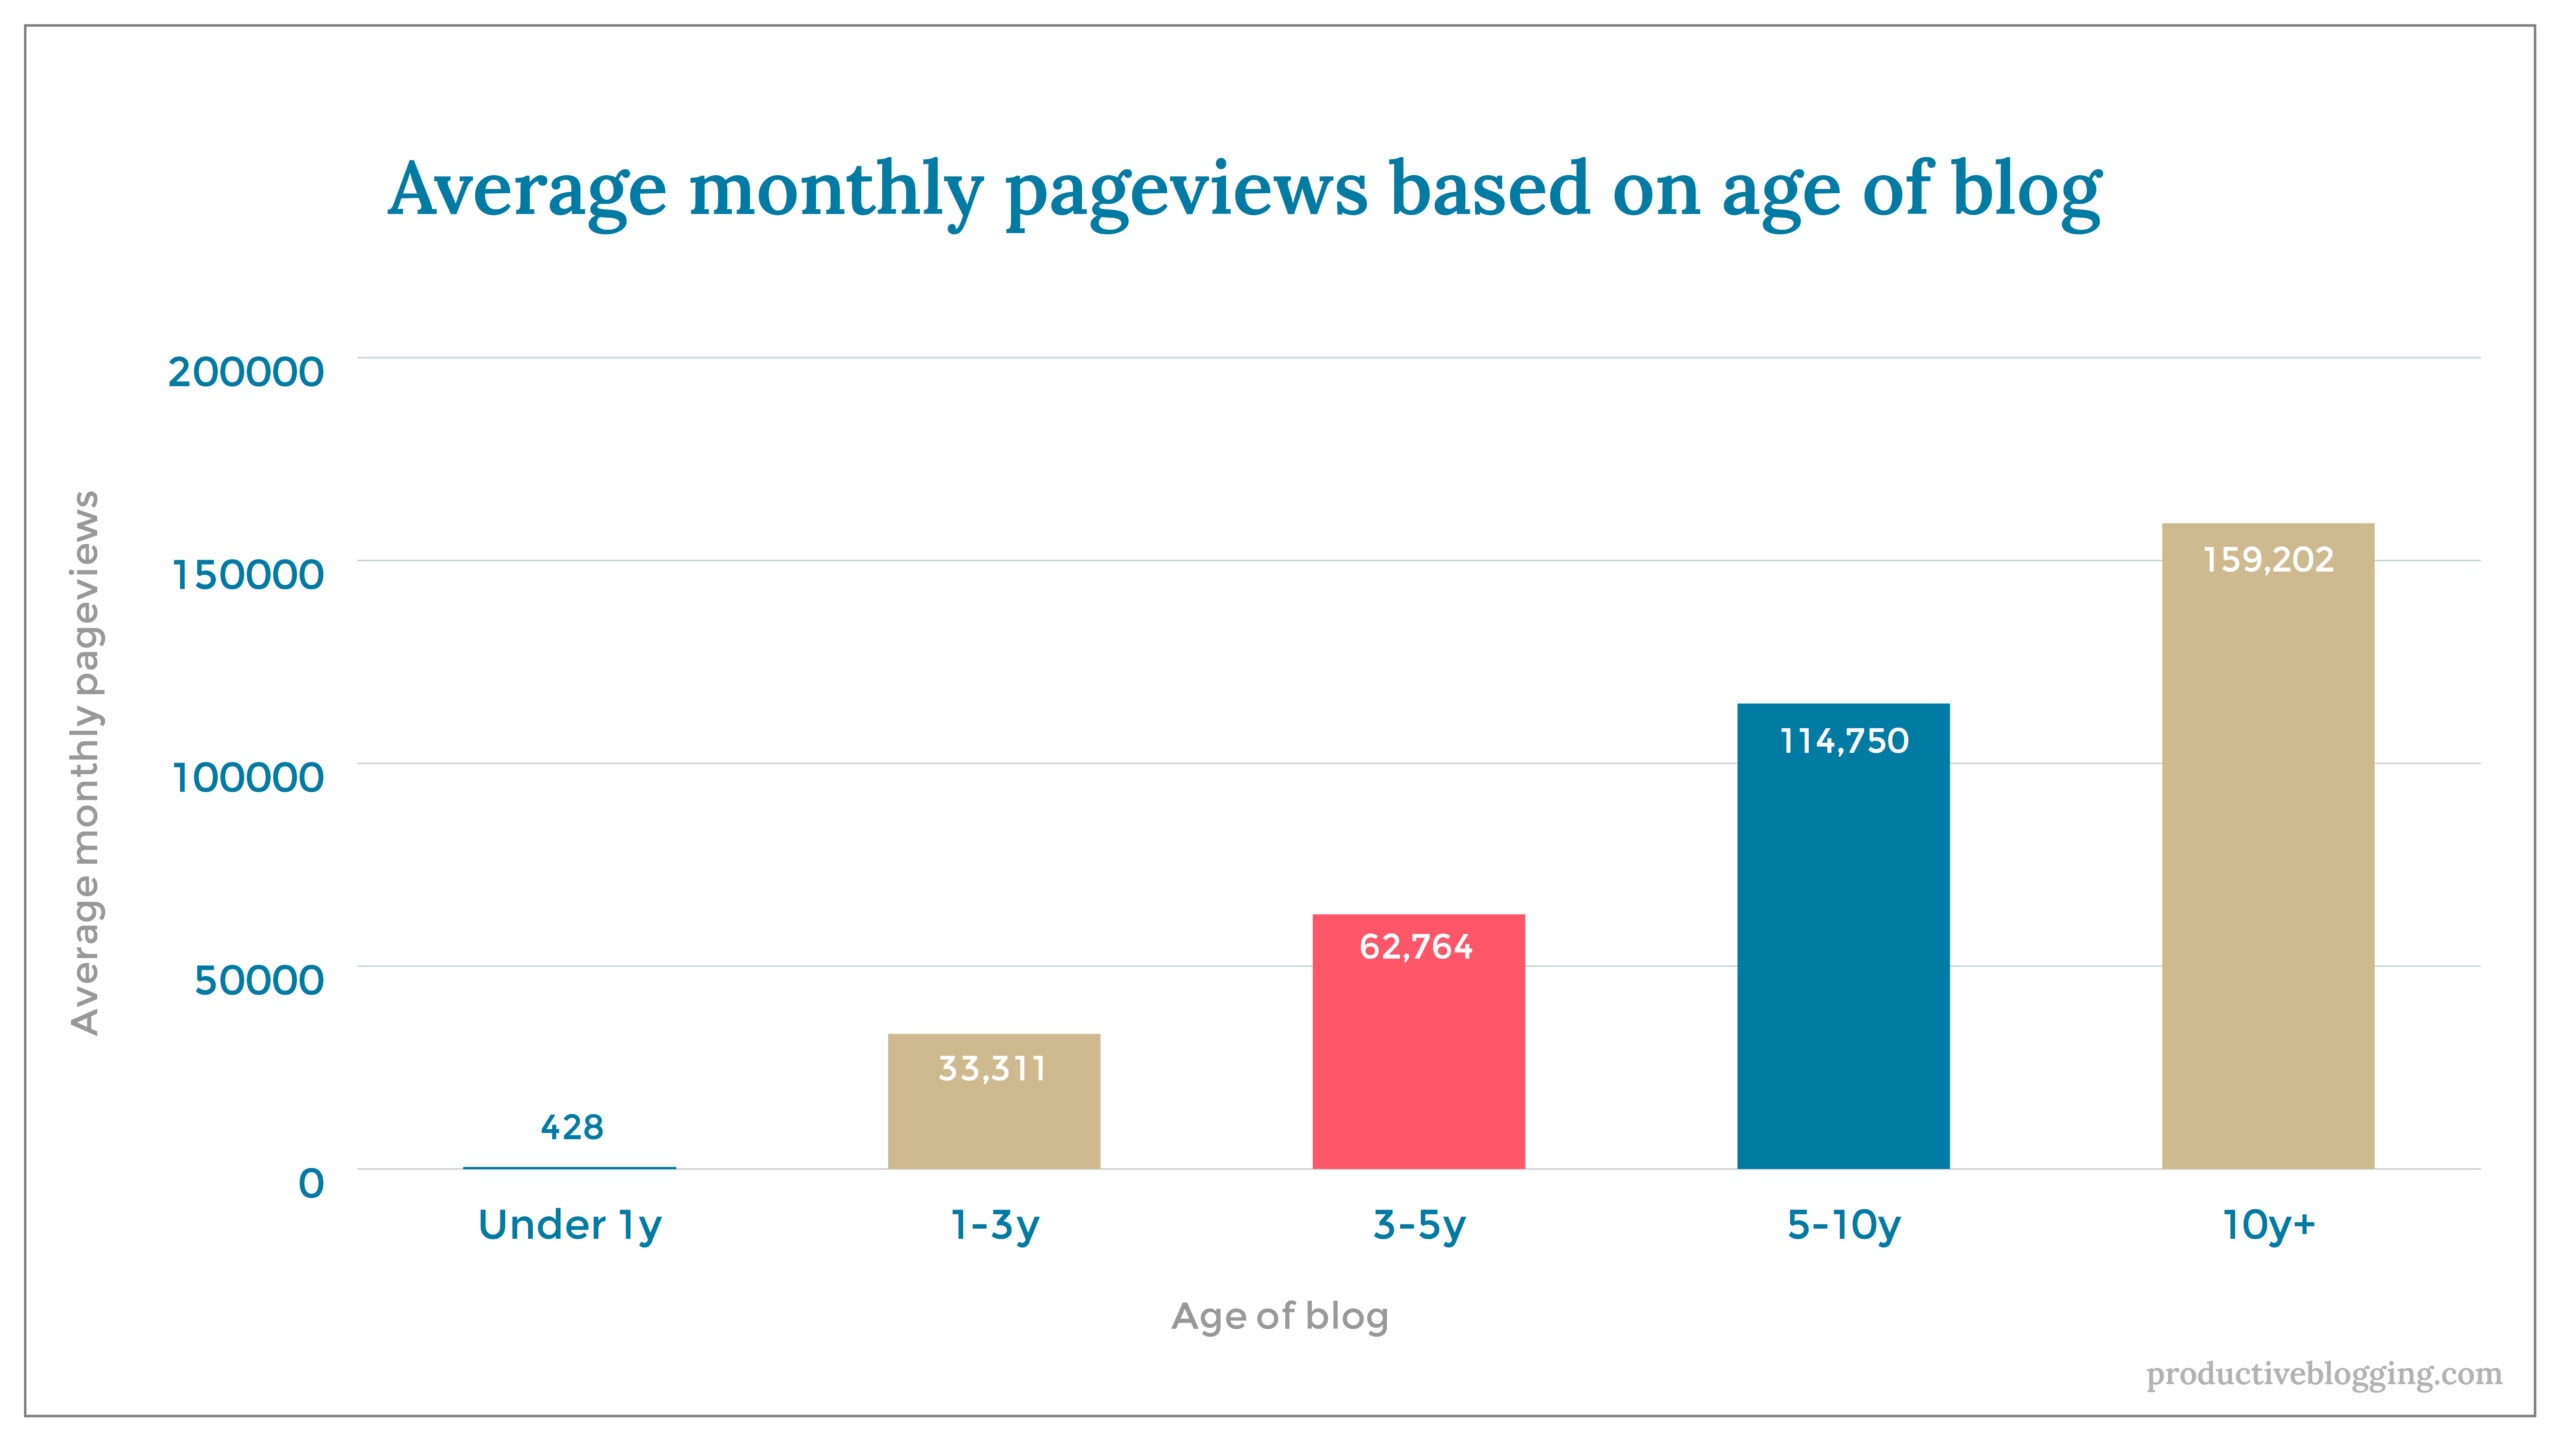 Average monthly pageviews based on age of blogX axis: Age of blogY axis: Average monthly pageviewsUnder 1y 	4281-3y 		33,3113-5y 		62,7645-10y 		114,75010y+ 		159,202